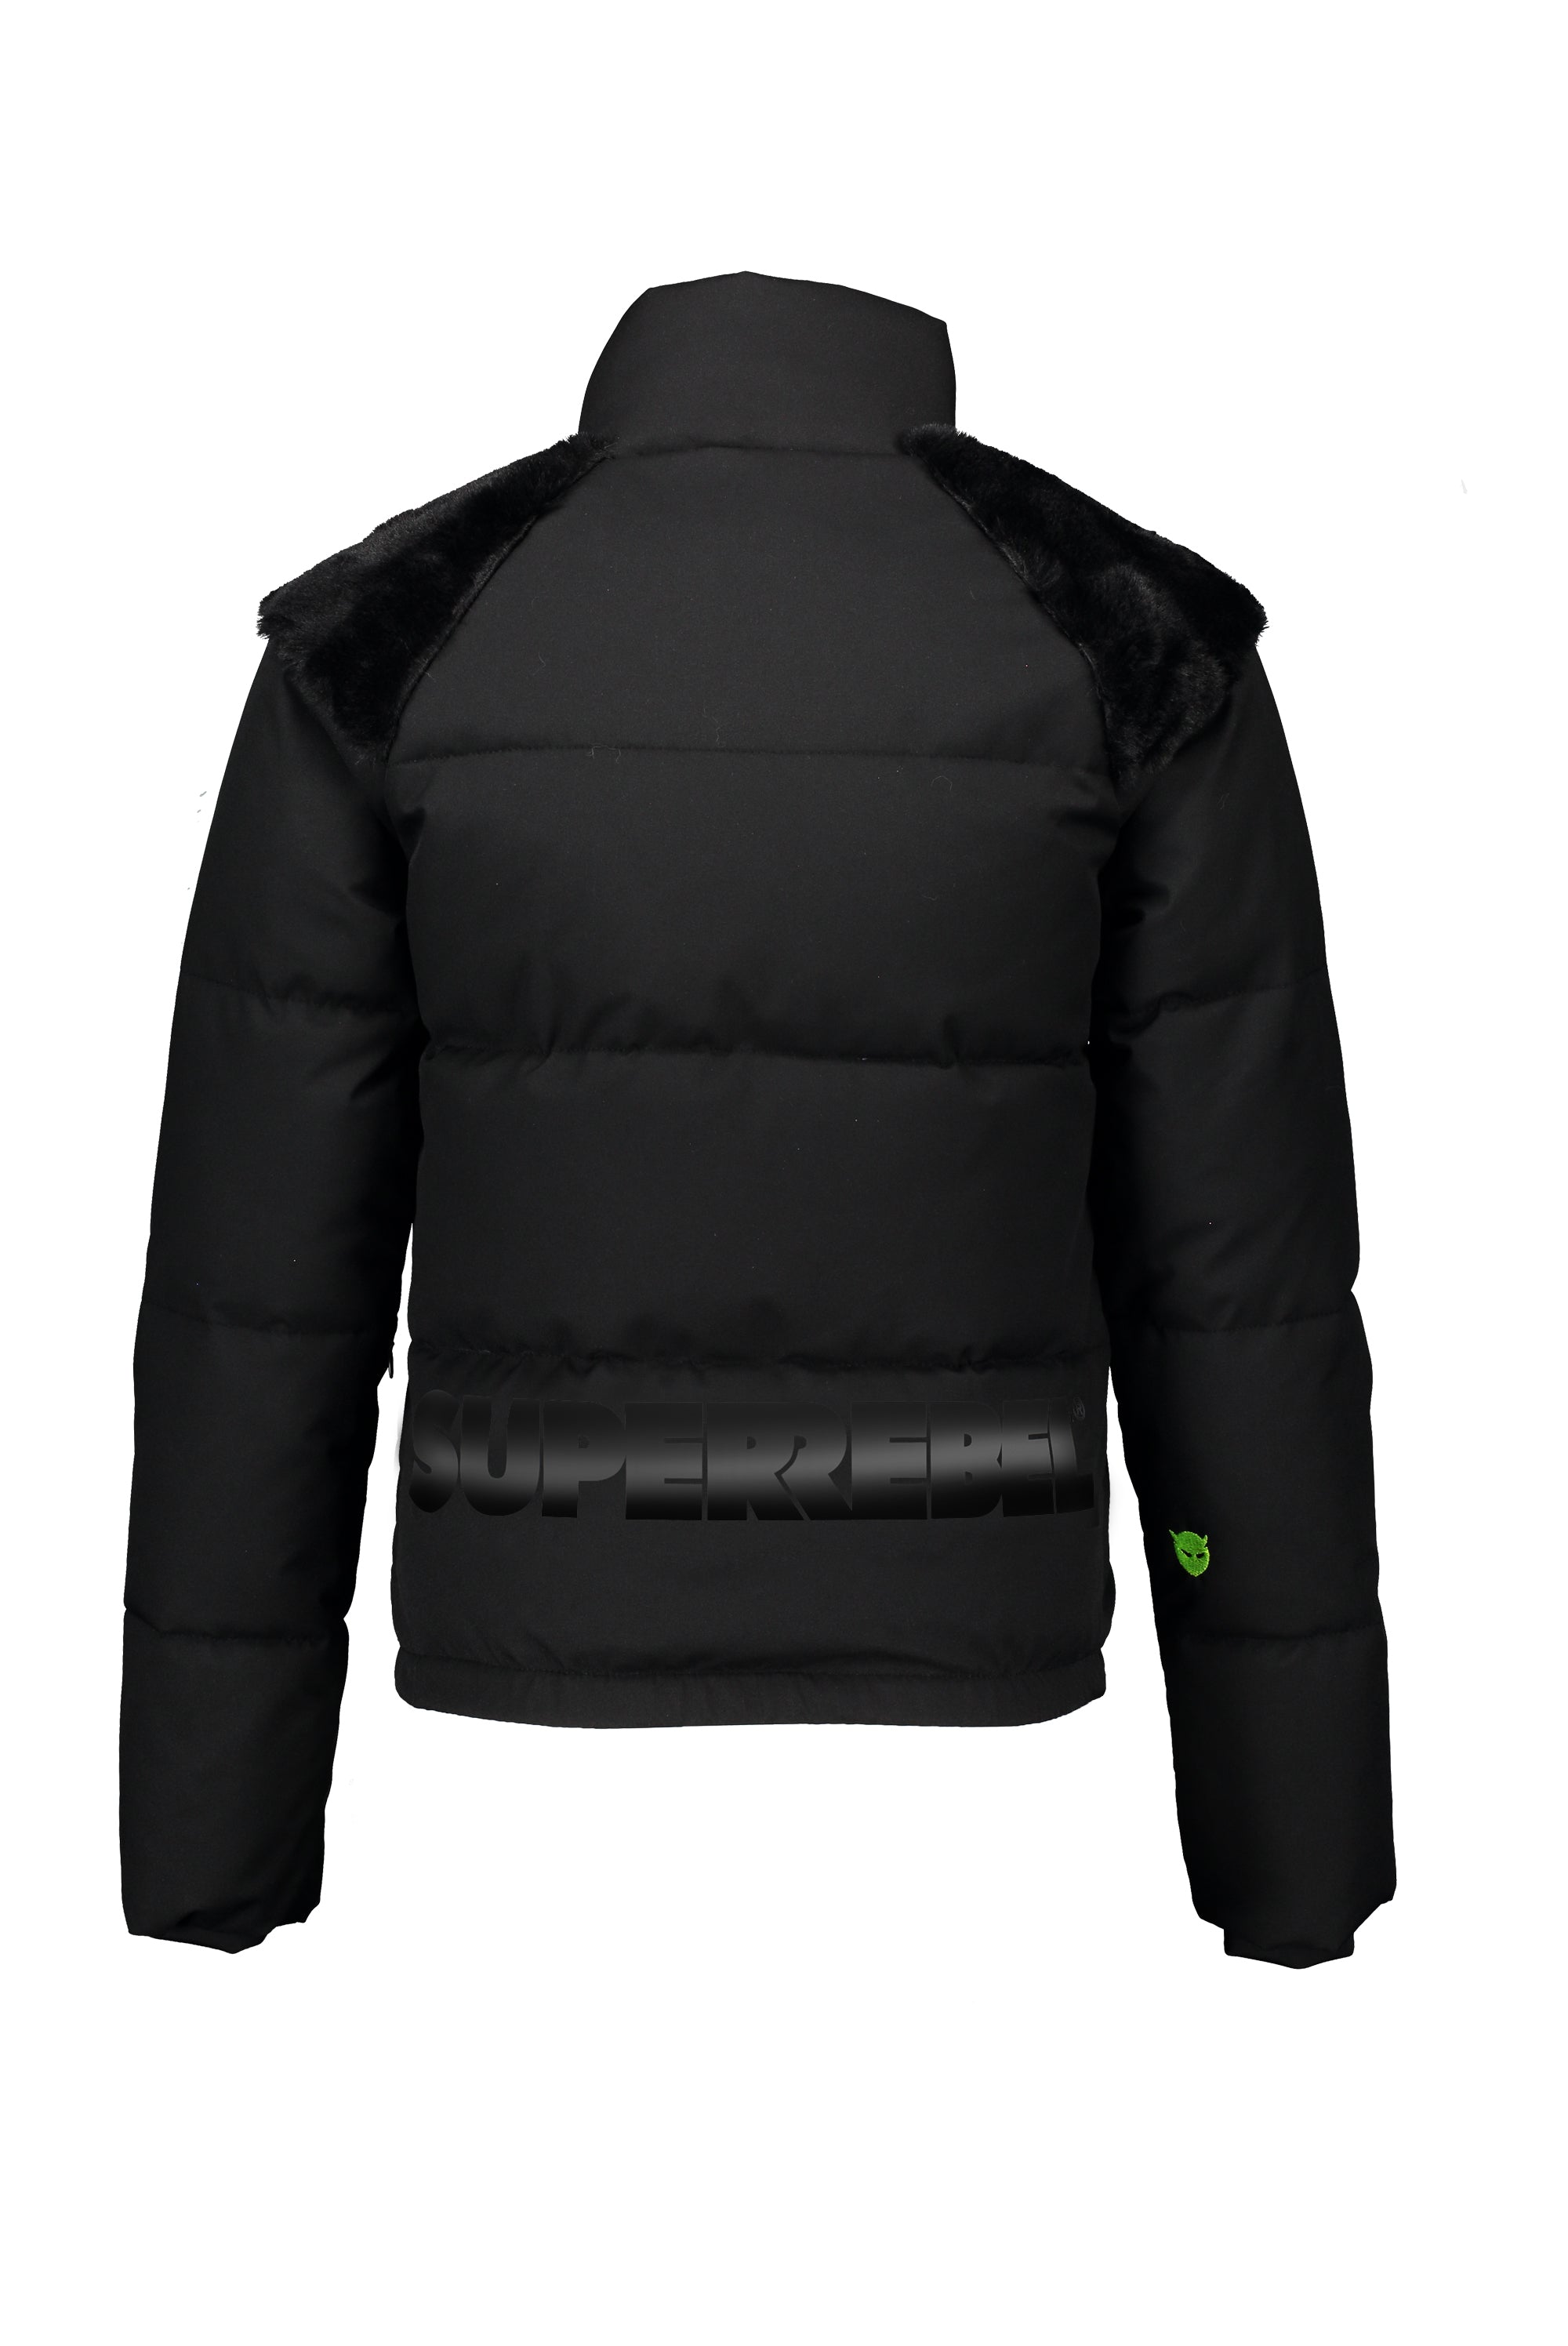 Super Rebel Winter Jacket STACK Black